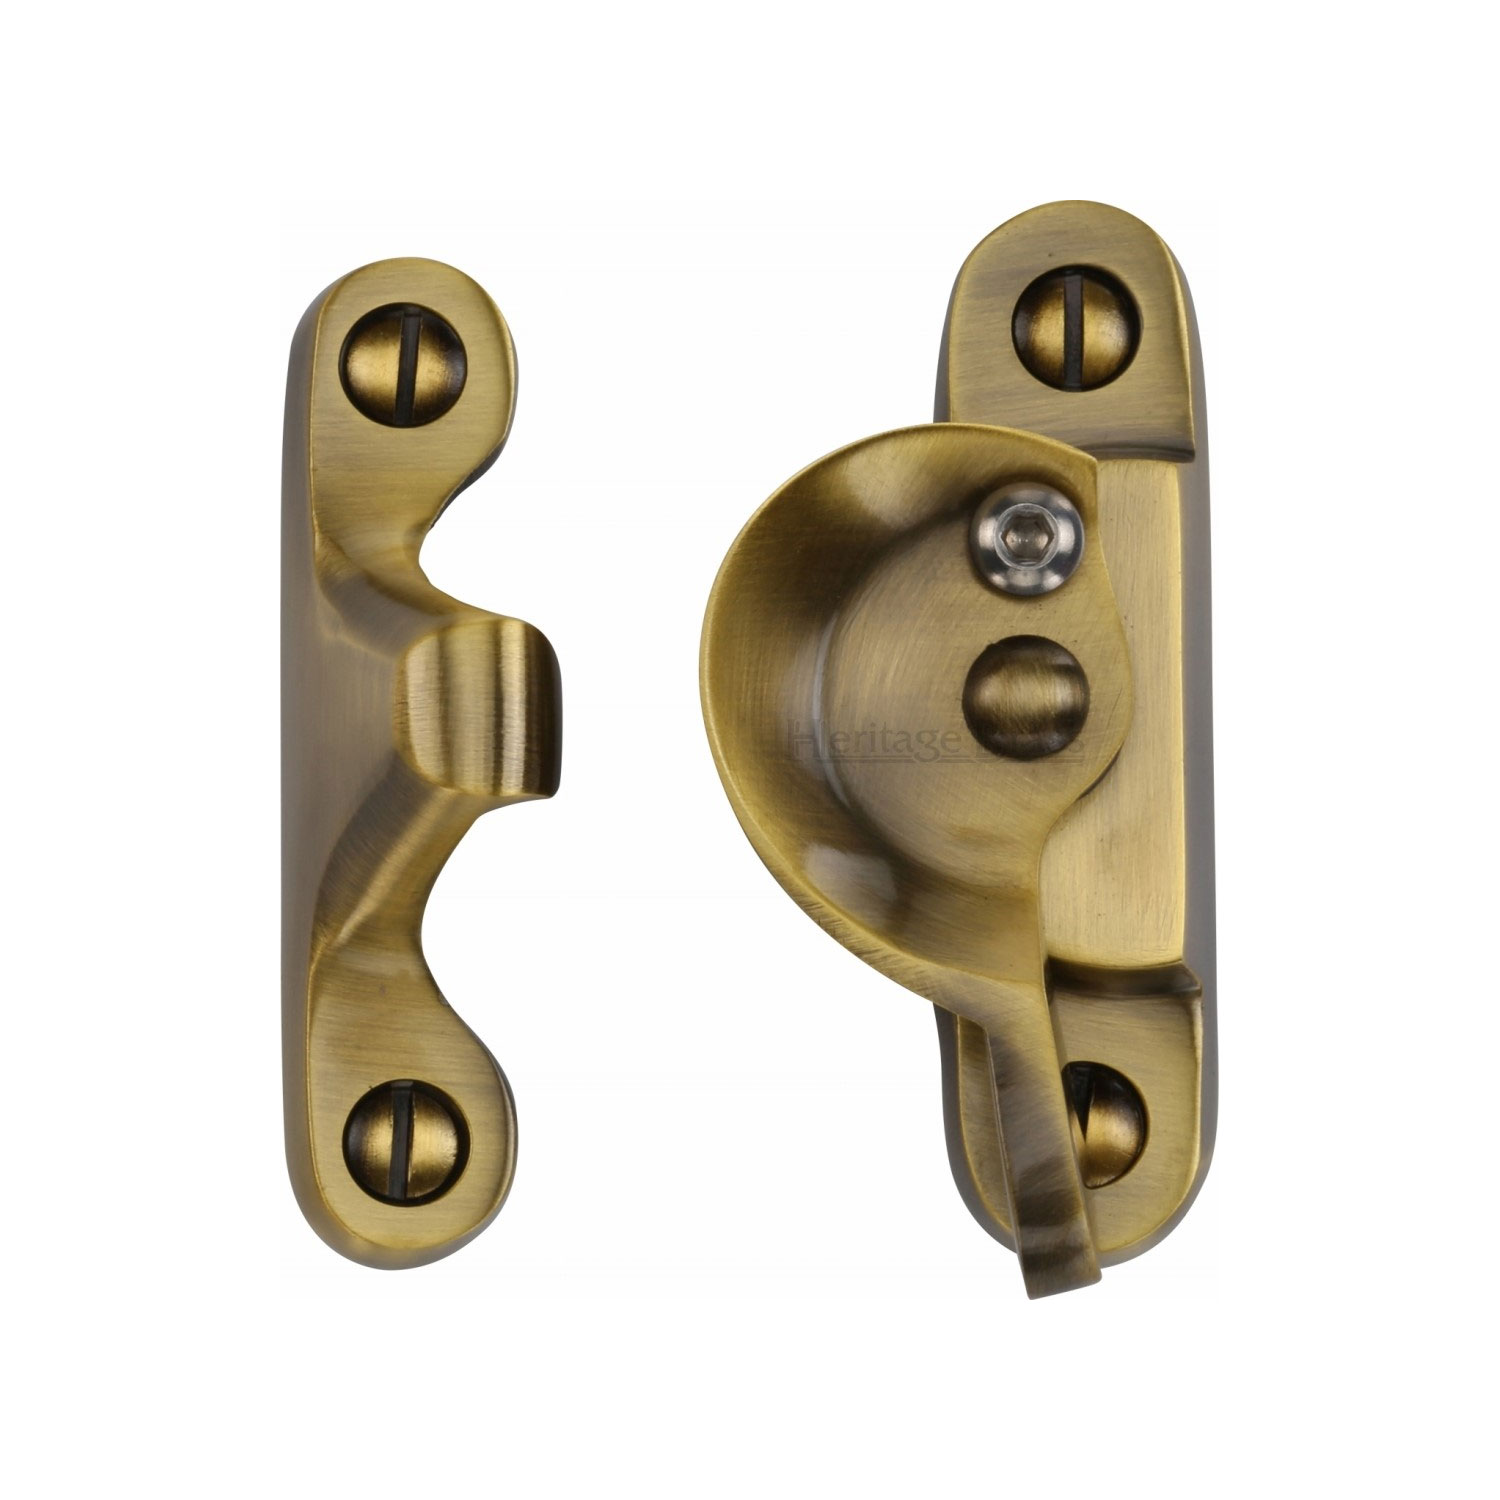 Heritage Brass Fitch Pattern Sash Fastener Lockable